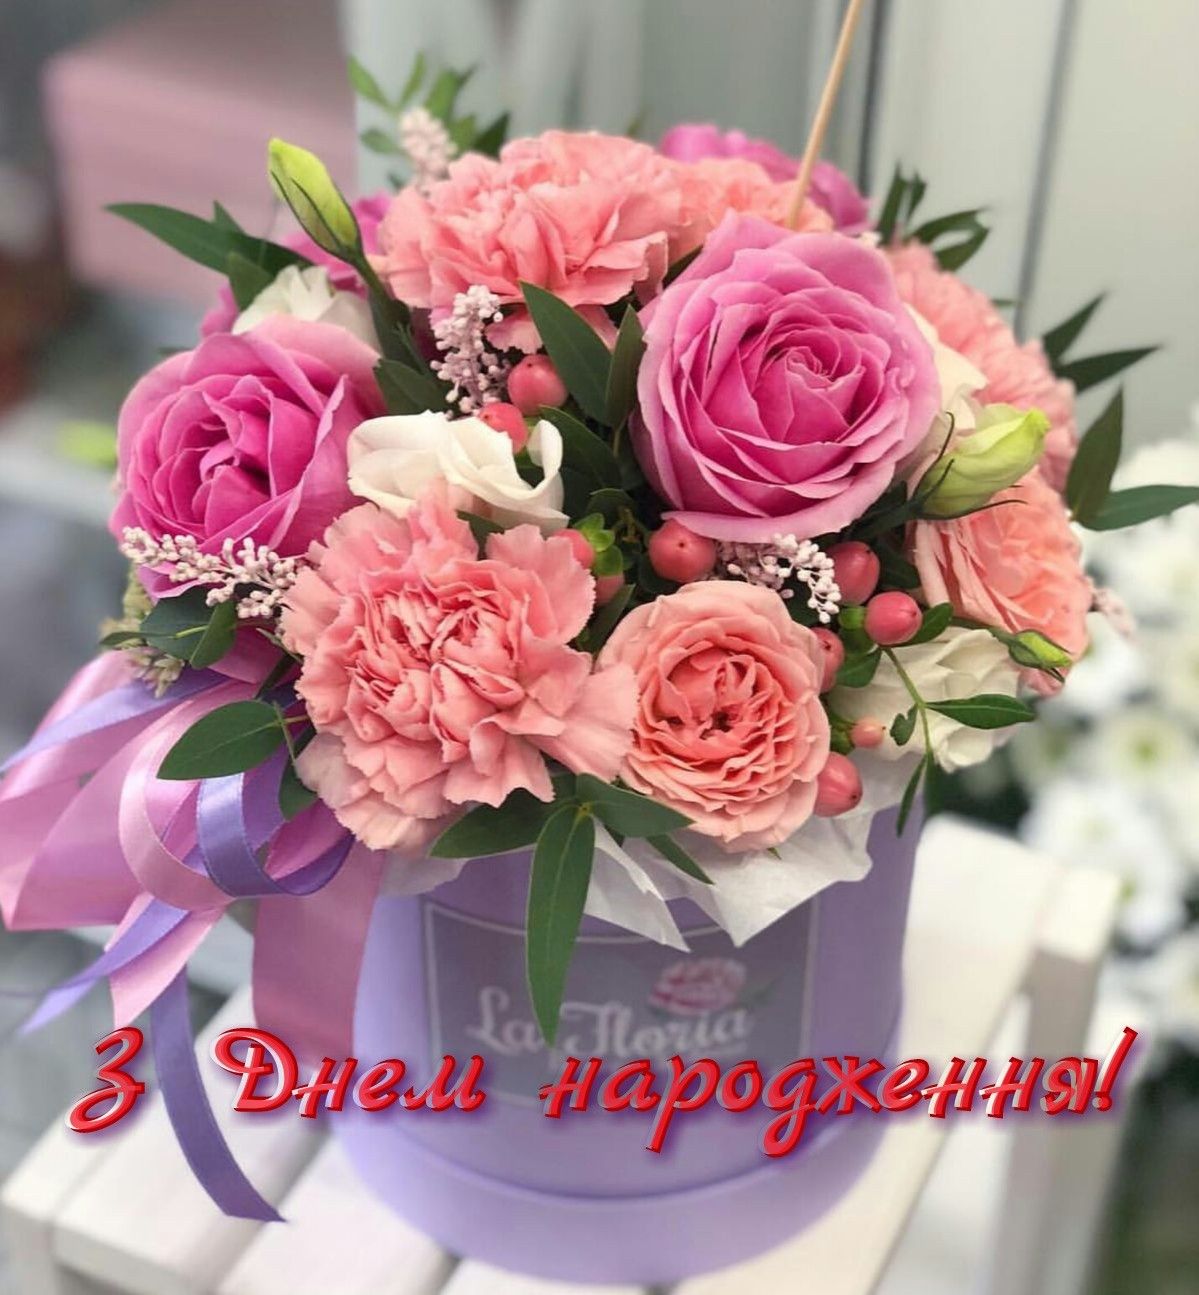 Привітати з днем народження дитини, на 3 рочки українською мовою
